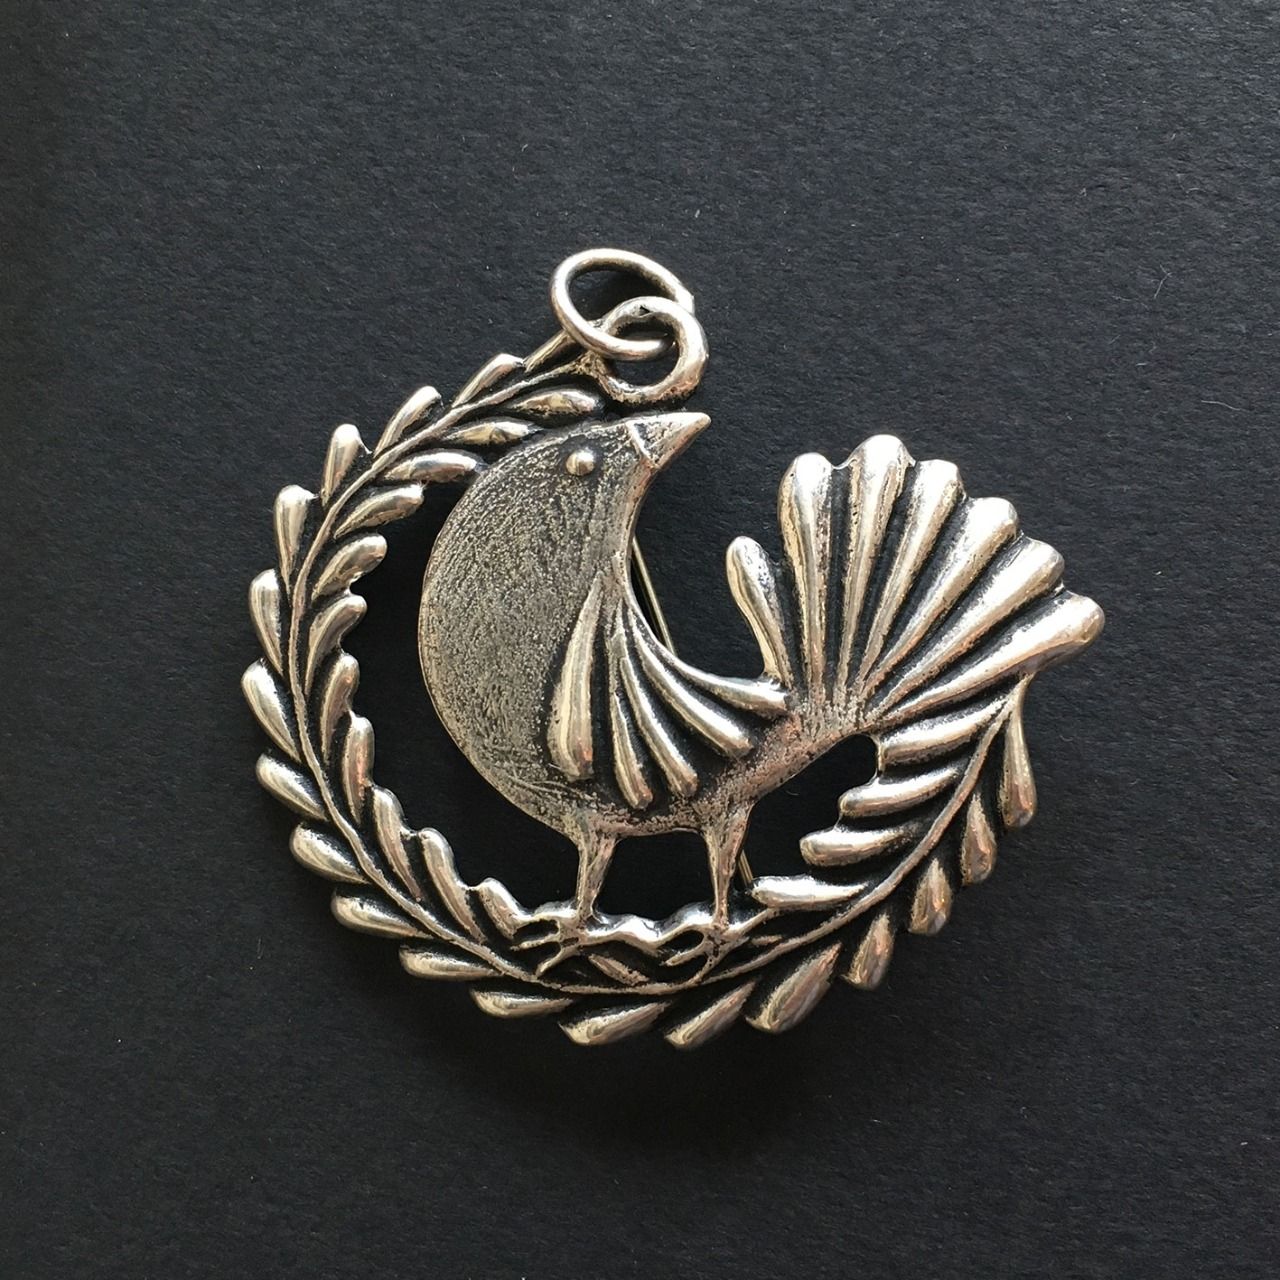 Broche-pendentif mixte argent 925/1000, "Ramage" (oiseau). Bijoux Toulhoat (Marie).